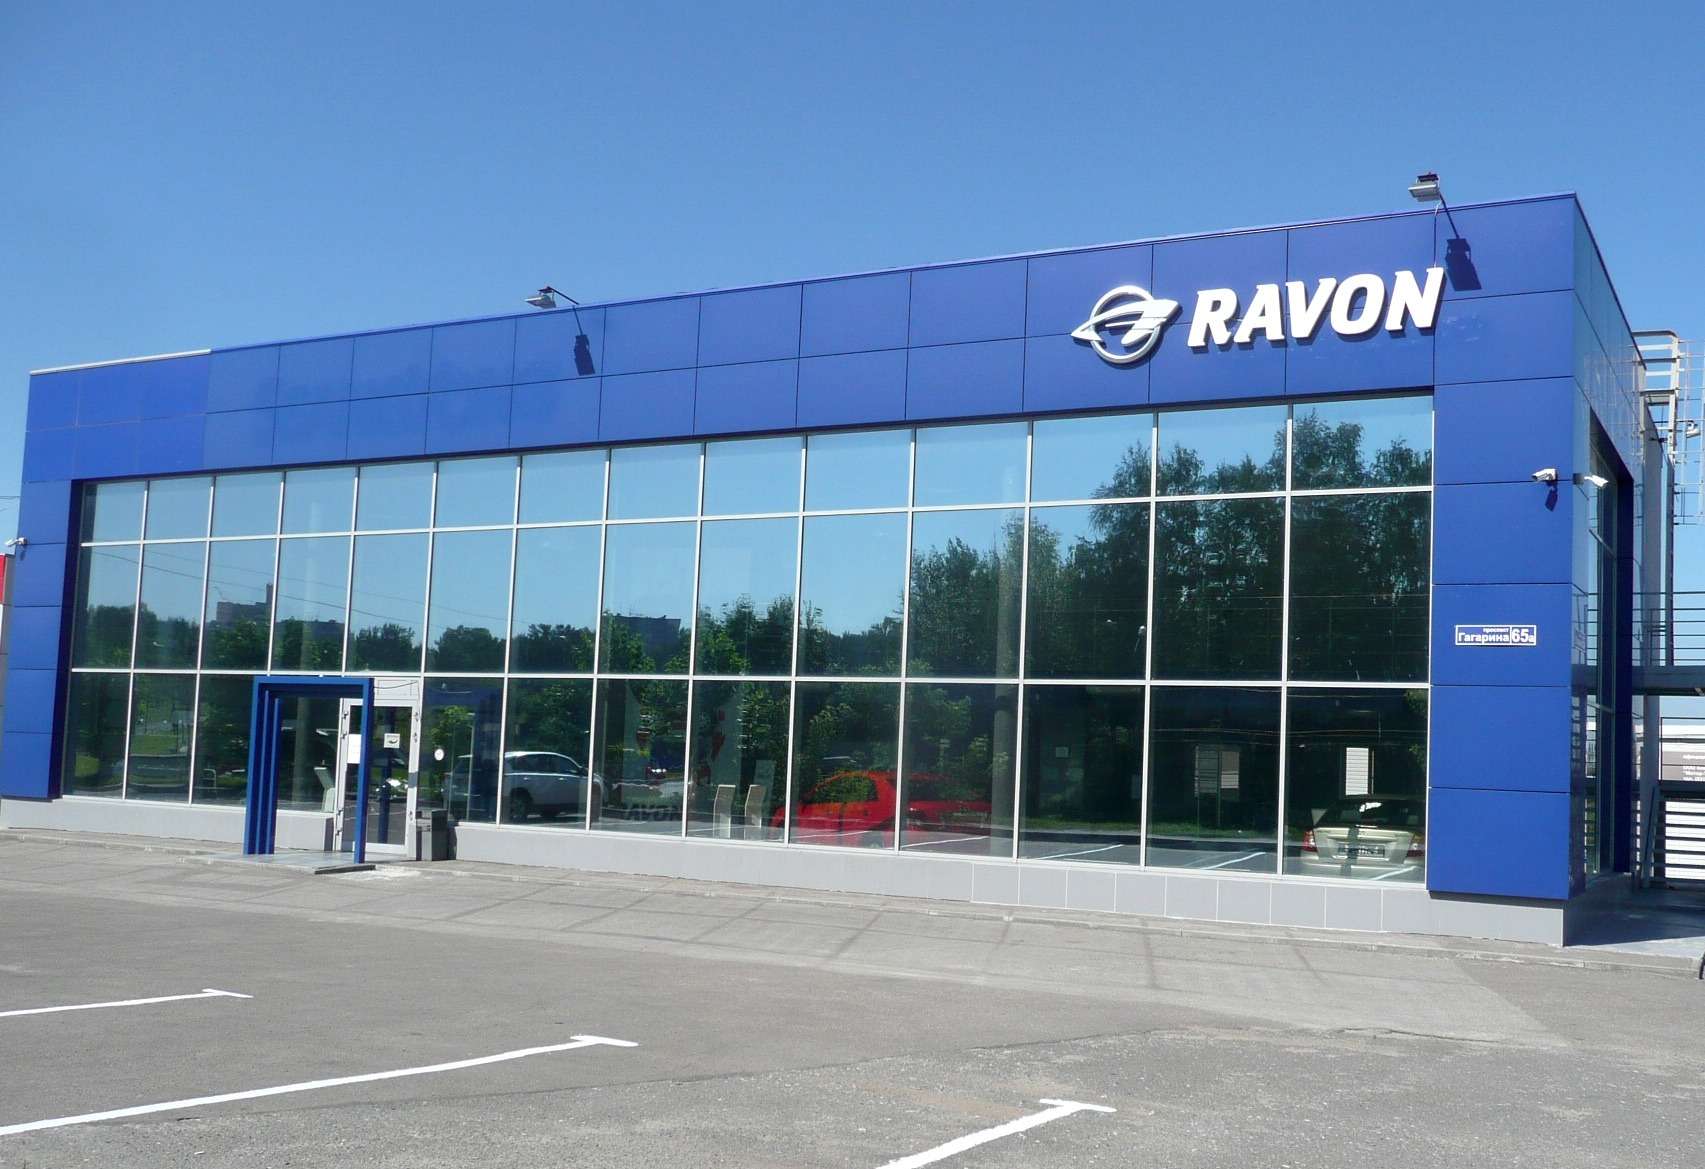 Развивающий свой бизнес в России бренд Ravon нарастил за прошлый год численность автоцентров в 2,5 раза, до 49 предприятий